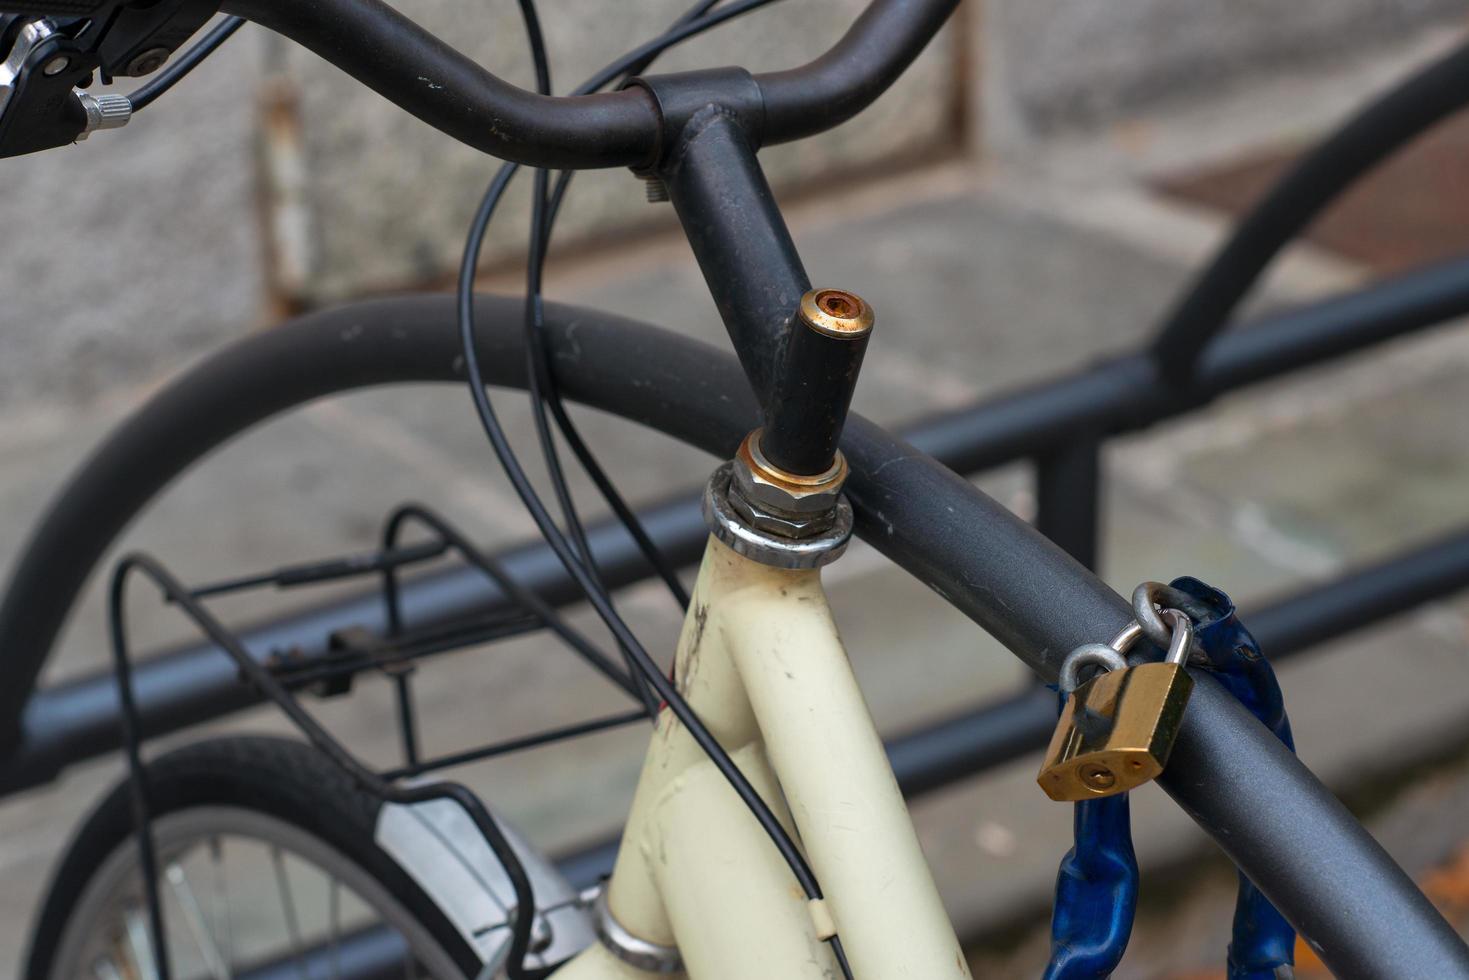 fiets vastgebonden met hangslot foto